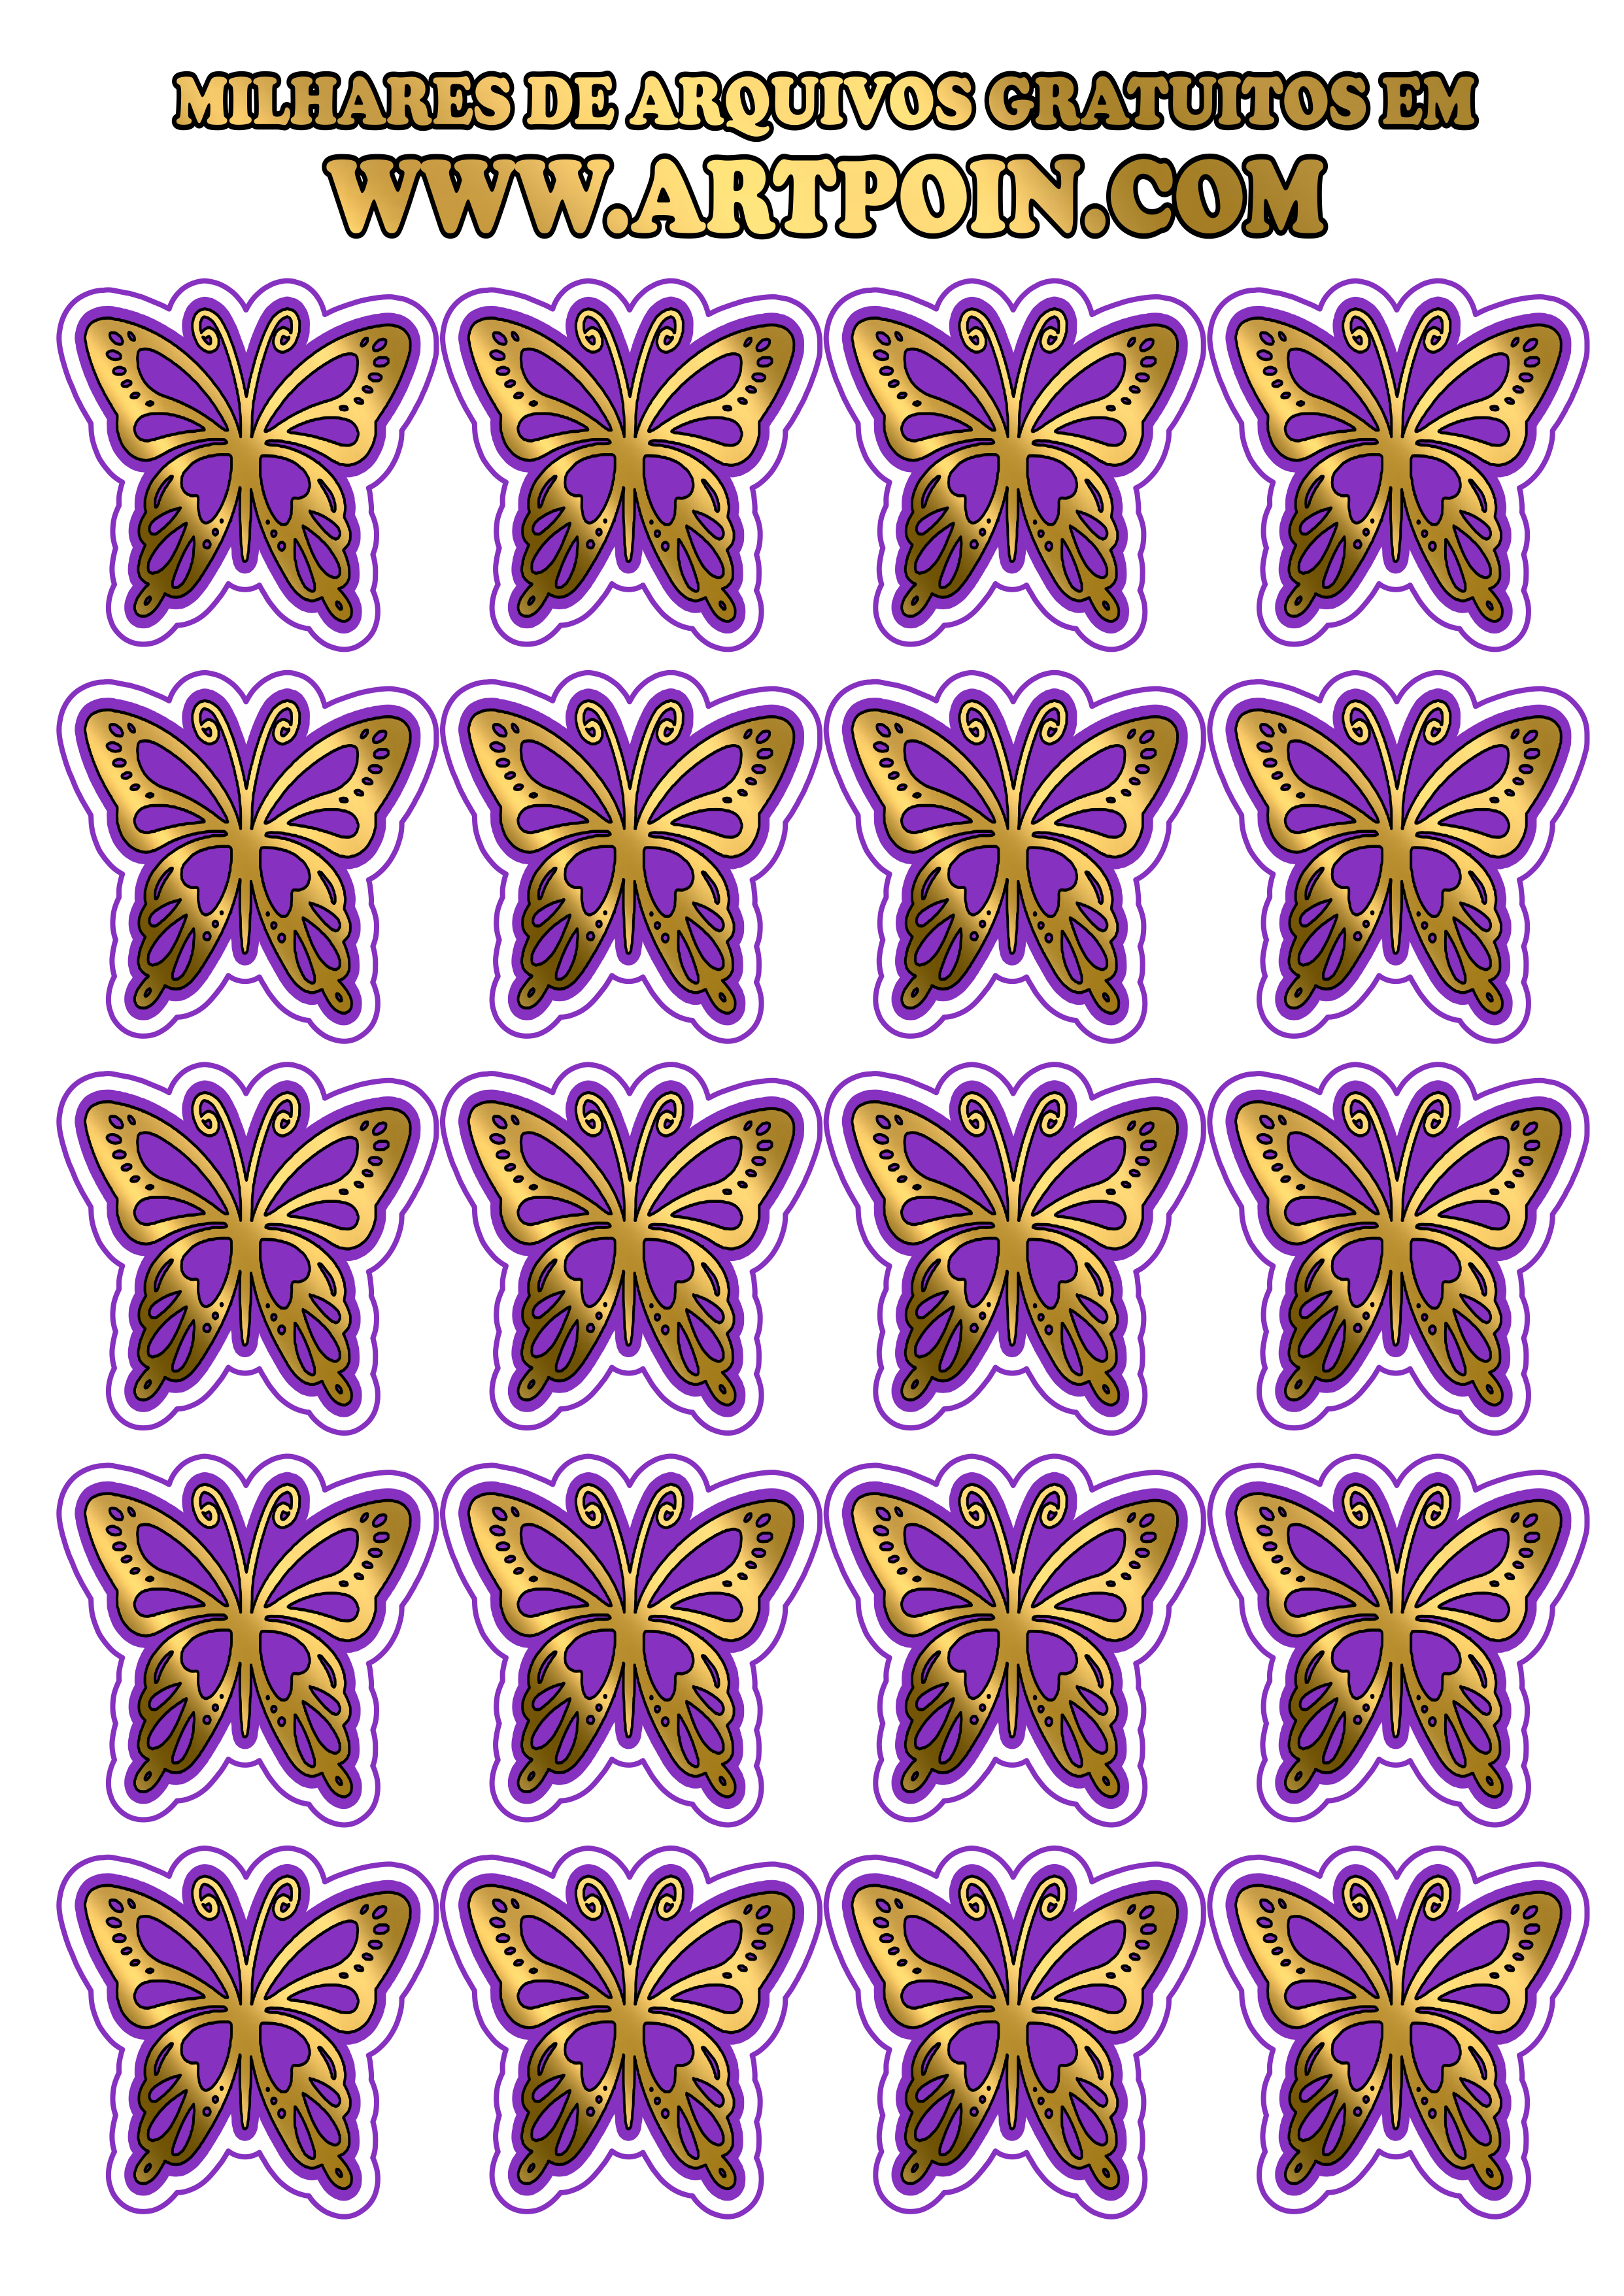 borboleta-dourada-com-lilas0